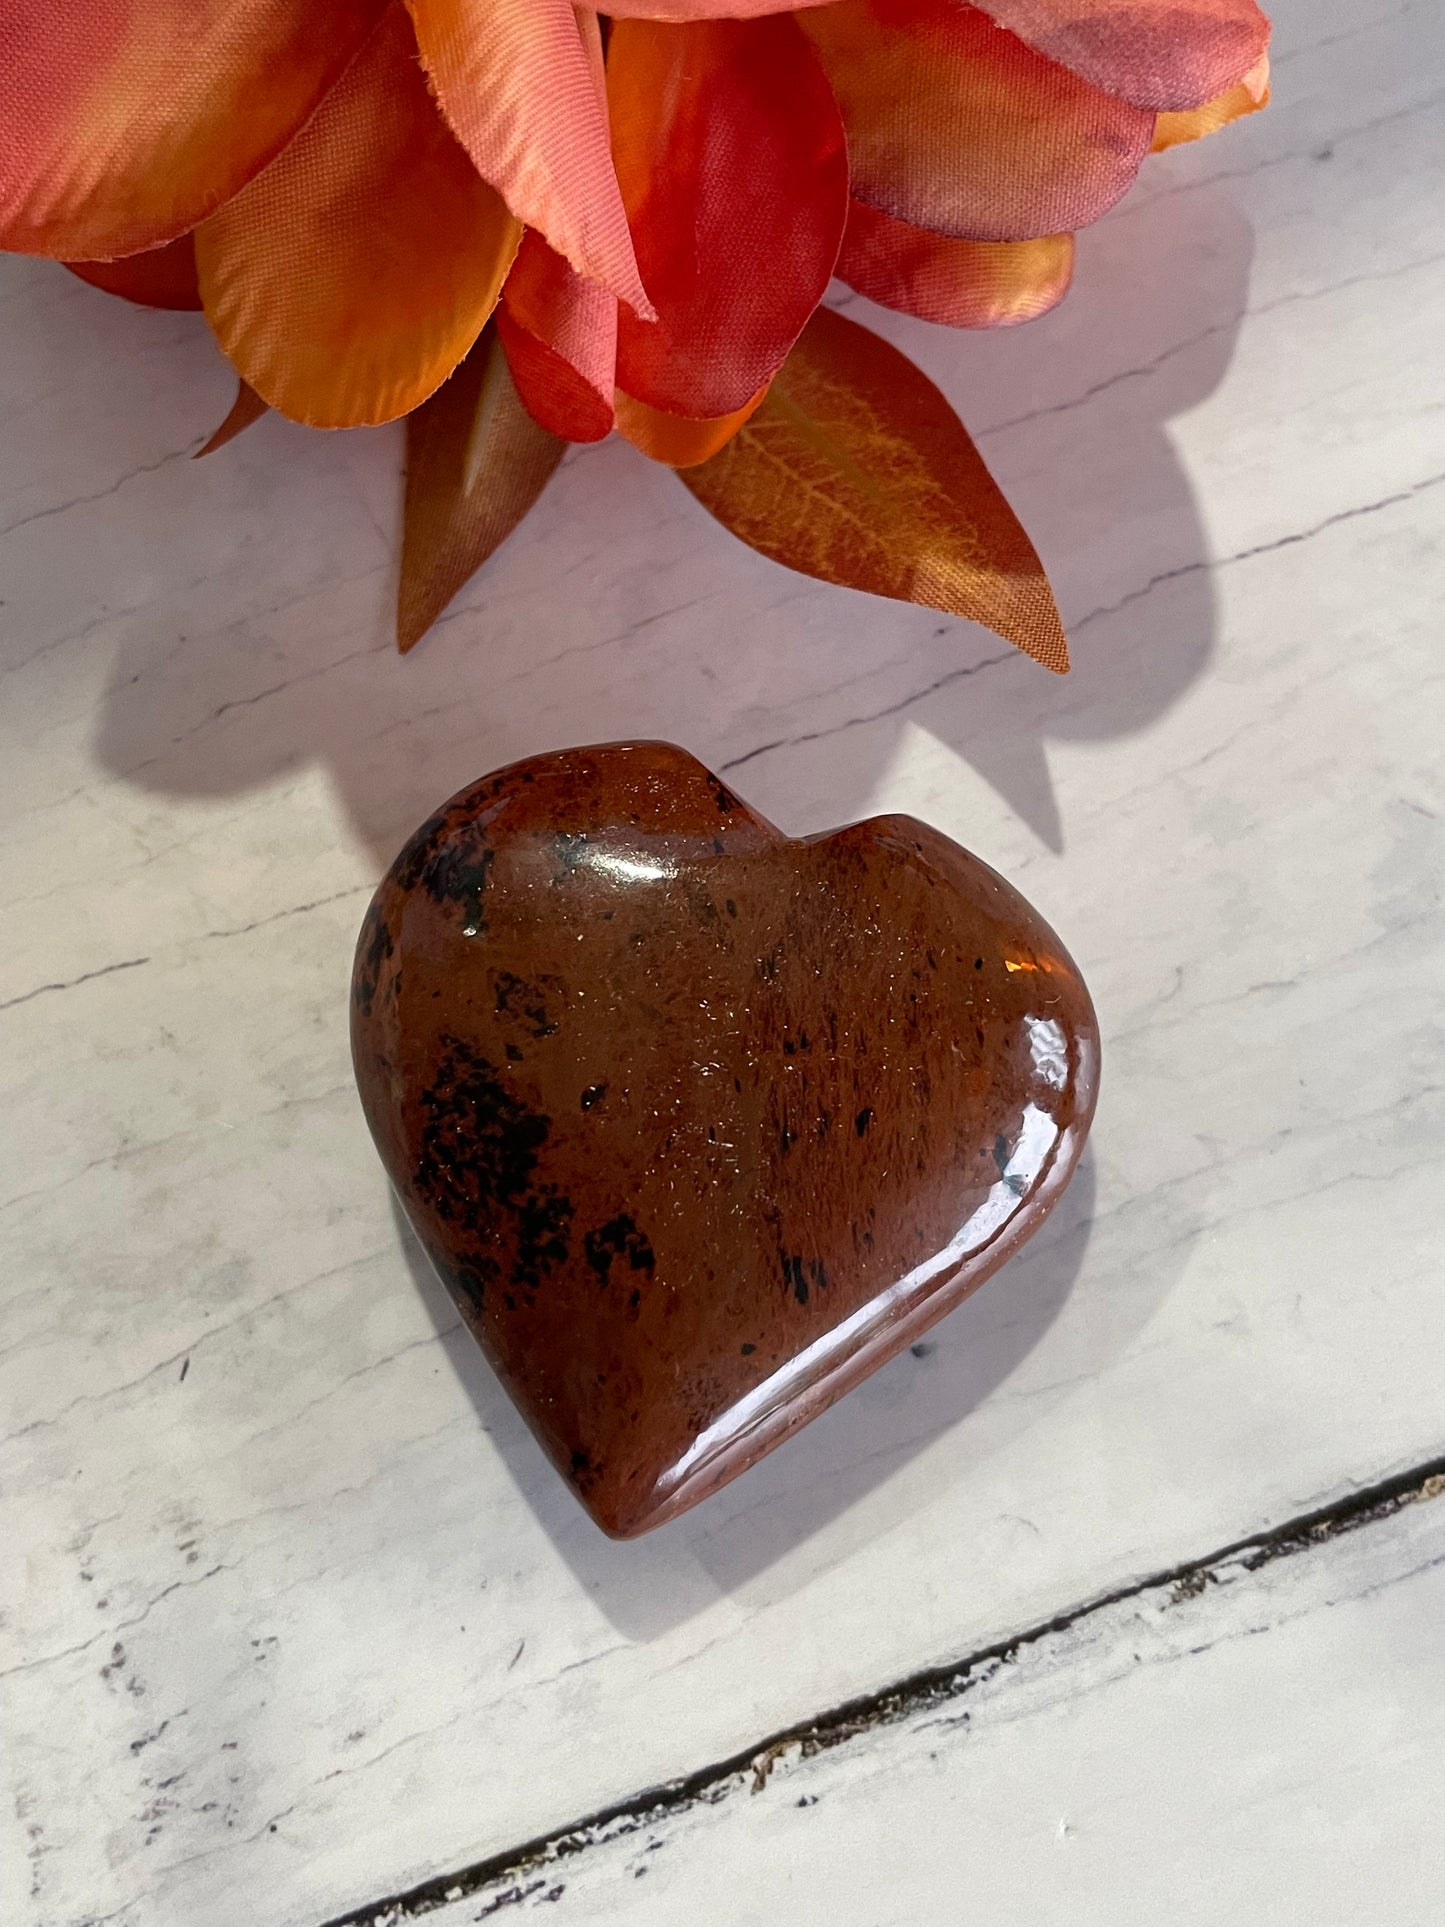 Mahogany Obsidian Heart